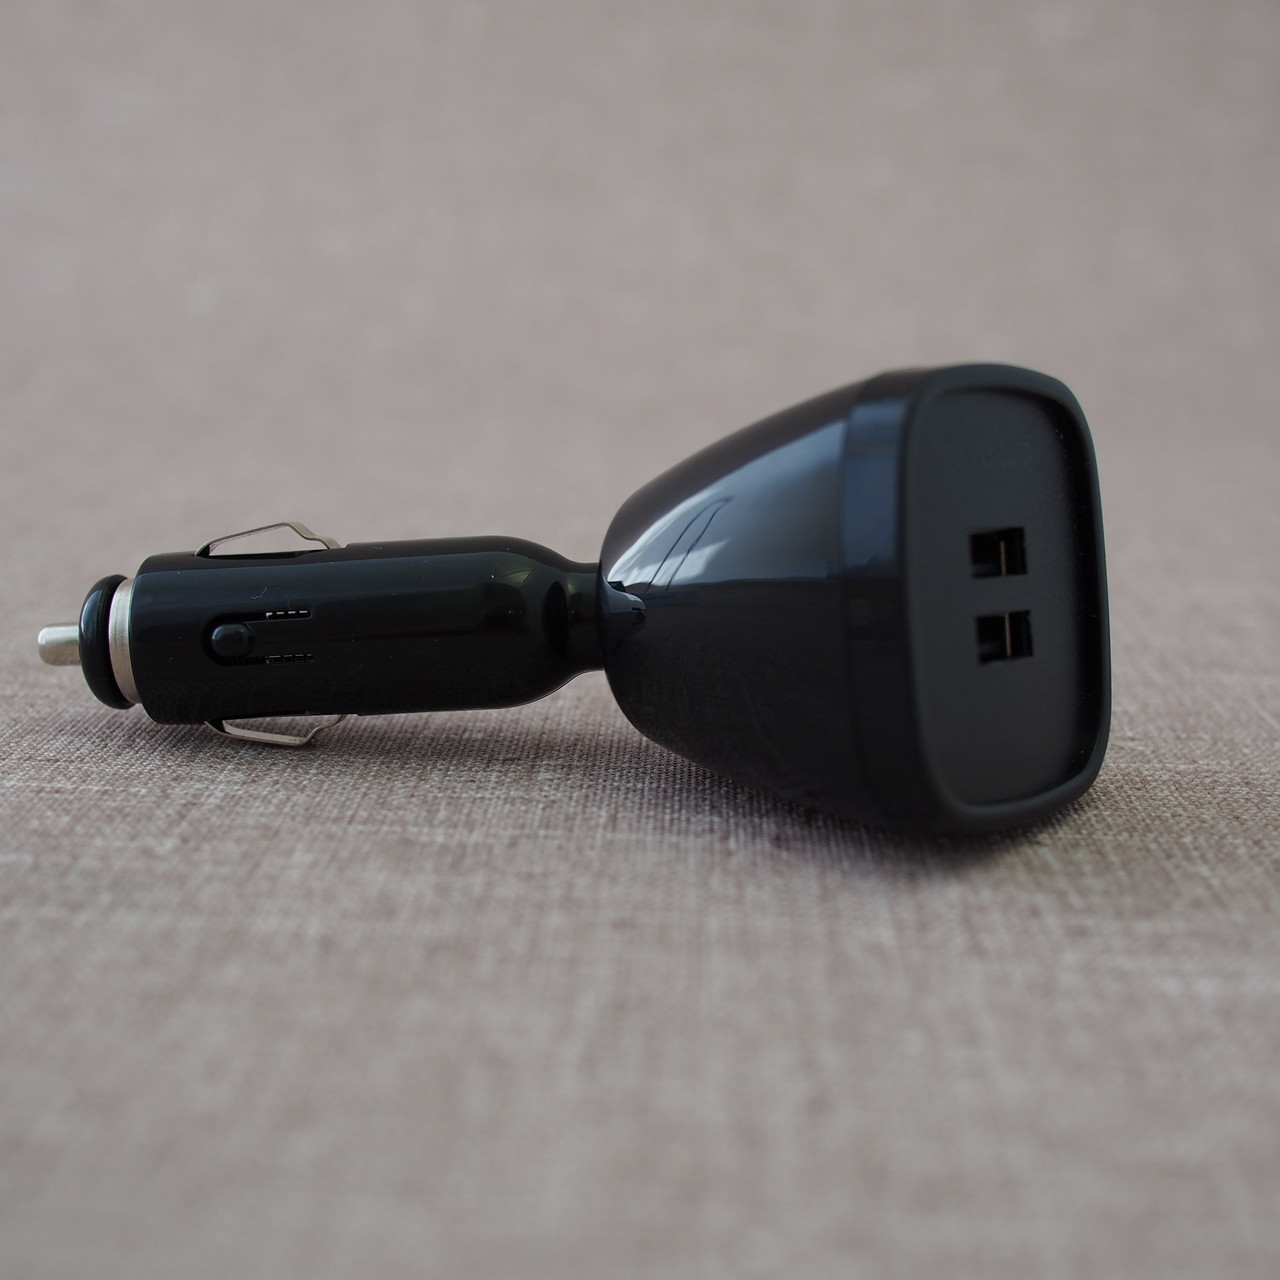 АЗУ без кабеля | USB Car Charger З Capdase